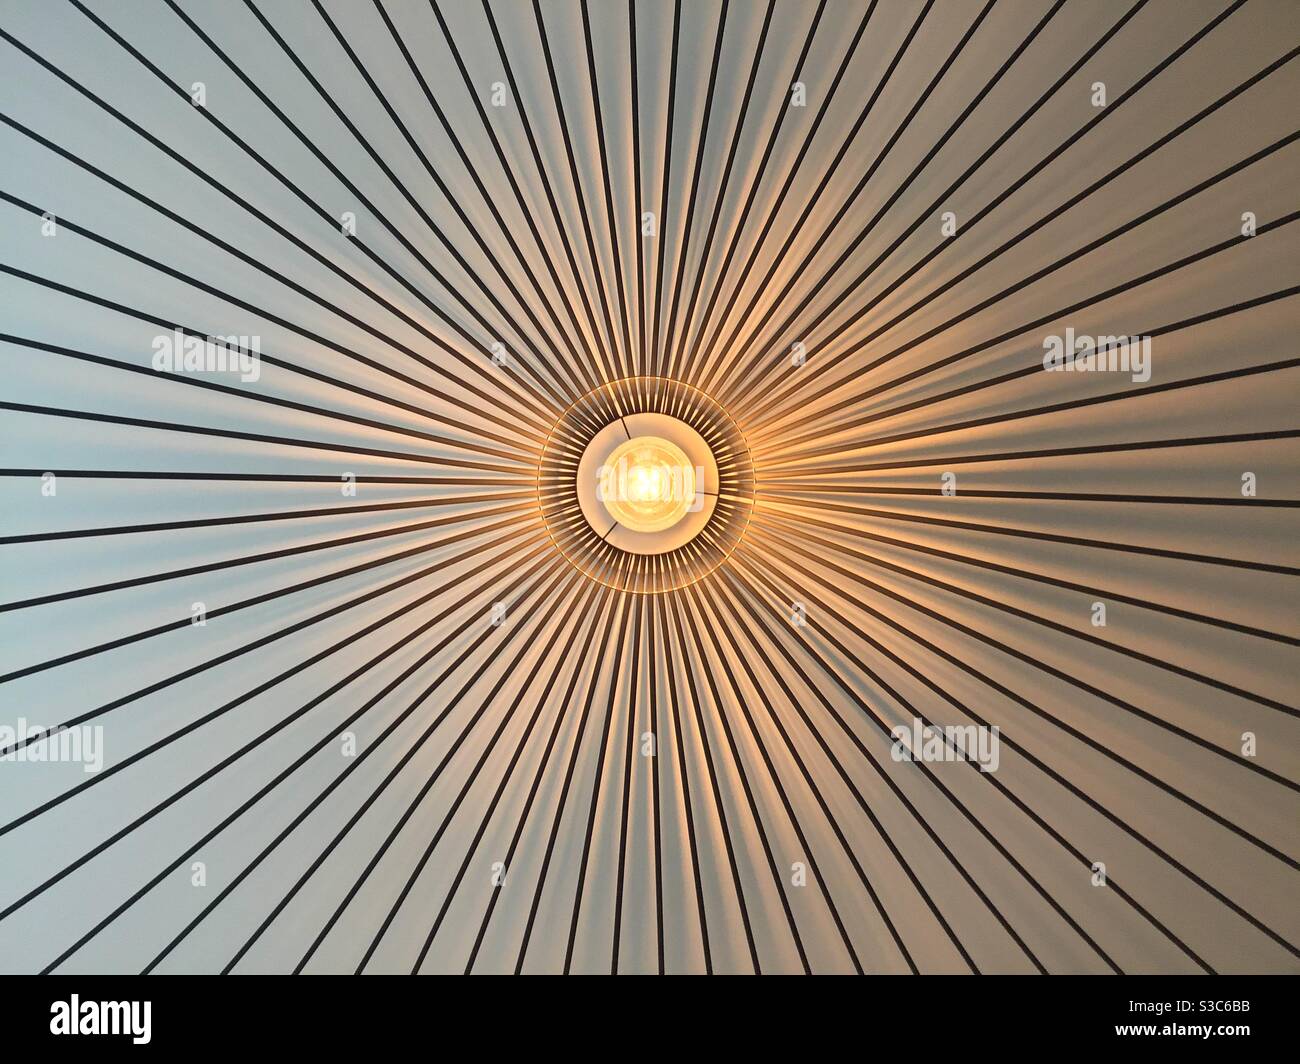 Ampulle jaune orange et lampe pour plafonnier d’intérieur Design moderne Stockfoto